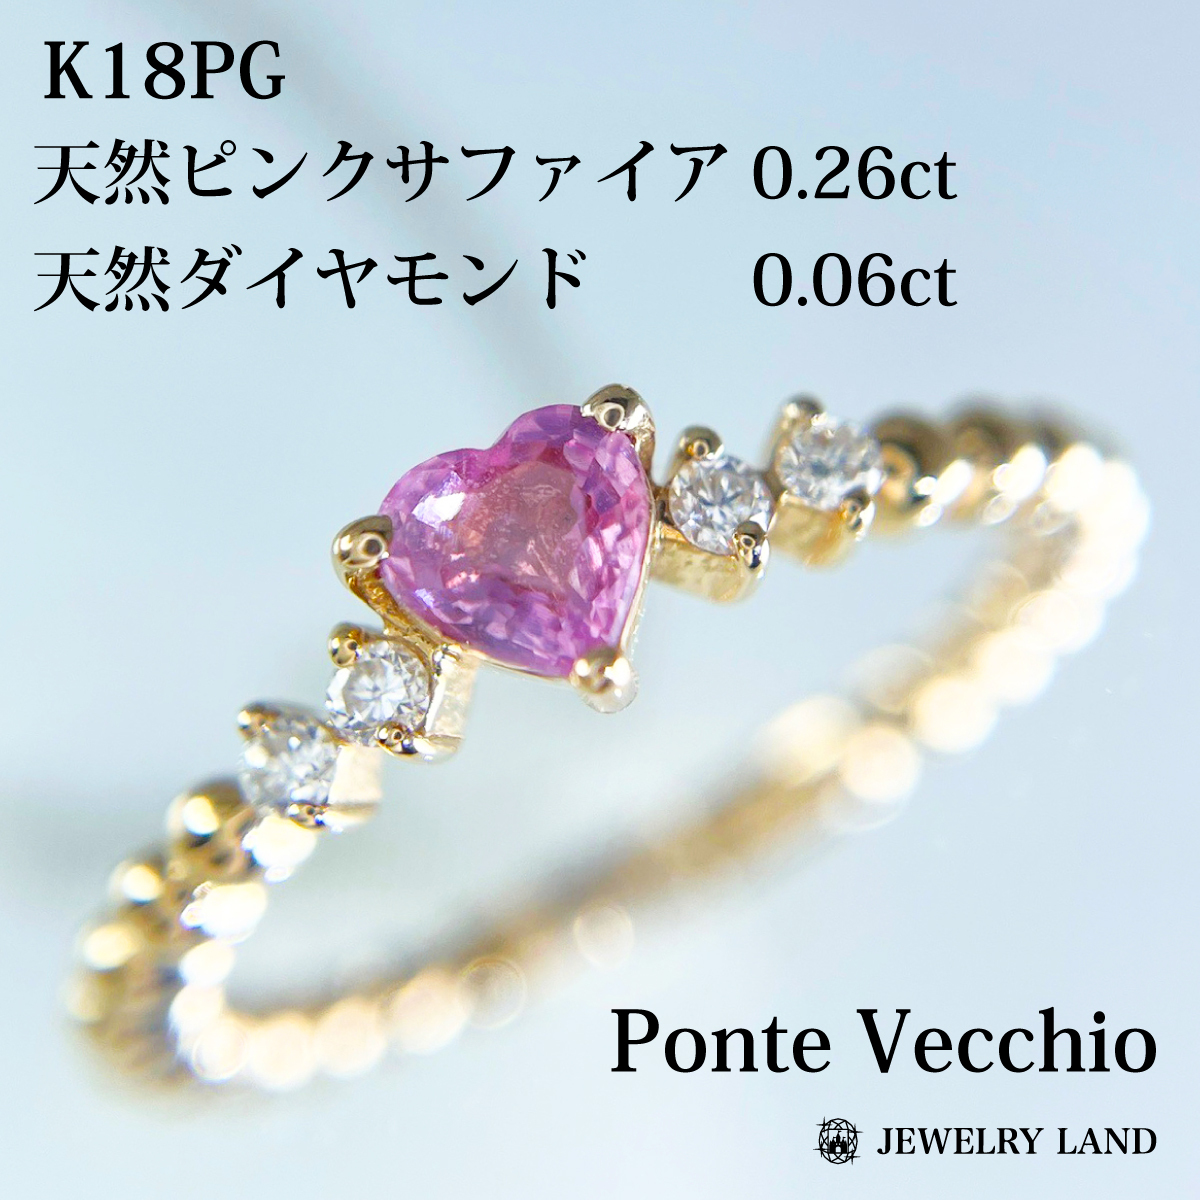 【ポンテヴェキオ】K18pg サファイア 0.26ct ダイヤ 0.06ct_画像1